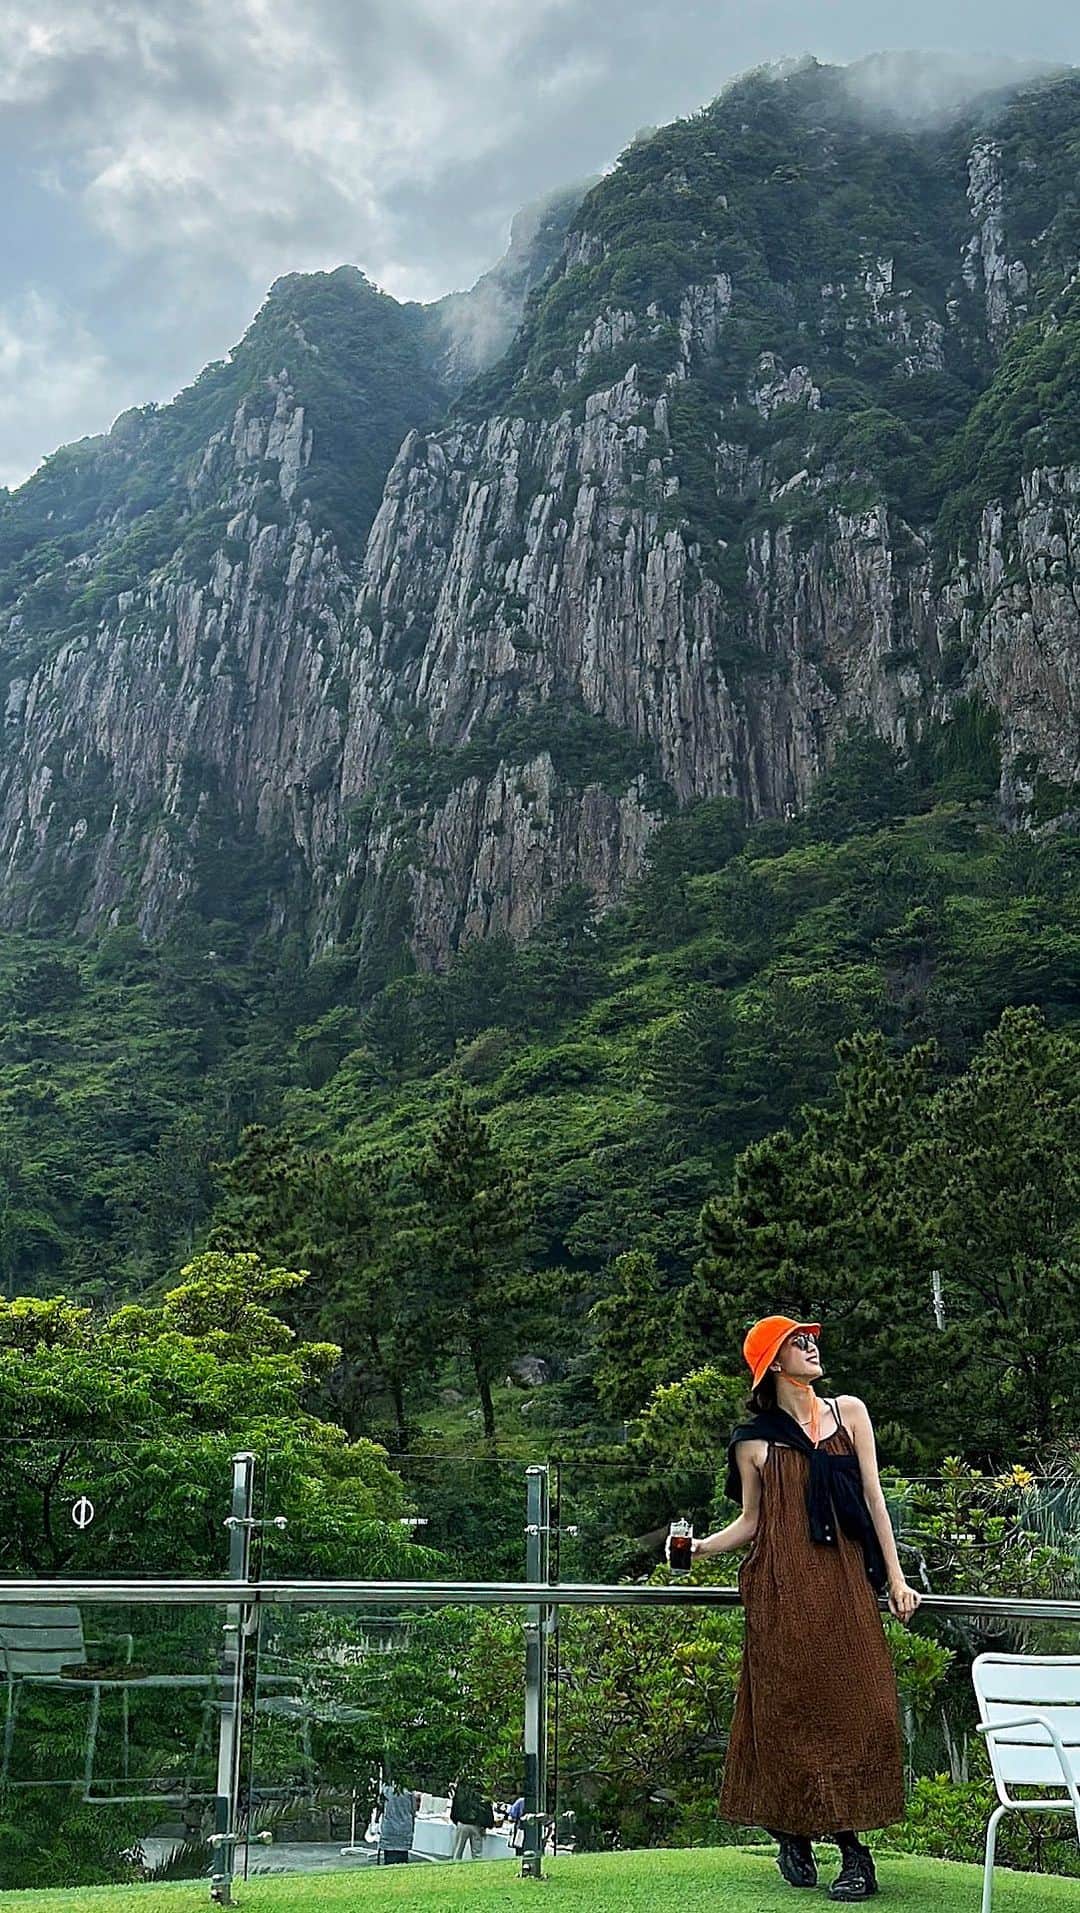 七野李冴のインスタグラム：「【Jeju Cafe☕️🍊】  チェジュ島のおすすめカフェ。 ※動画の最後に余計なダンス入ります  まずは空港から1時間半ほど離れた西帰浦エリアにある 壮大な岩を眺めながらくつろげるカフェ。 岩肌フェチにはたまらない絶景で Instagramで発見した時には絶対に行くと 心に決めたカフェは 行ってみたら期待を裏切らないすごいカフェだった！  カ…カフェですか…？  という敷地と建築。 広い店内には至る所にさまざまなくつろぎスペースがあり みんな思い思いにカフェタイムを過ごしている。  ビーチにもすぐにアクセスできて 西帰浦のこのエリアの観光地になっているくらい 車の出入りもすごかった！  なのに、不思議とウェイティングもなくみんなが座れる。 その秘密は席数なのか… 日本ならB&Bも併設してそうな規模のカフェだった！  絶景だからってぬるま湯に浸からないのが さすが韓国のカフェ！ メニューも豊富、ケーキもたくさん。 グッズも可愛くて欲しくなる。 コーヒーもおいしくって、ここはわざわざ来る価値あり！  韓国のカフェビジネスの凄さを思い知りました🤩  📍Jeju seogwipo ☕️ @jejuoneandonly  🇰🇷 #risastripinkorea   #jejuisland #jejutravel #jejudo #jejucafe #jeju_island #jejutrip #jejuislandkorea #jeju_korea #jejustagram #visitjeju #jejukorea #travelling  #seogwipo #seogwipocafe #jejudo_korea  #チェジュ #チェジュ島 #チェジュ島カフェ #チェジュ旅行 #韓国カフェ #海外旅行好き #カフェ旅 #おすすめカフェ #韓国旅行 #韓国情報 #海外旅行 #西帰浦  #제주 #제주여행」